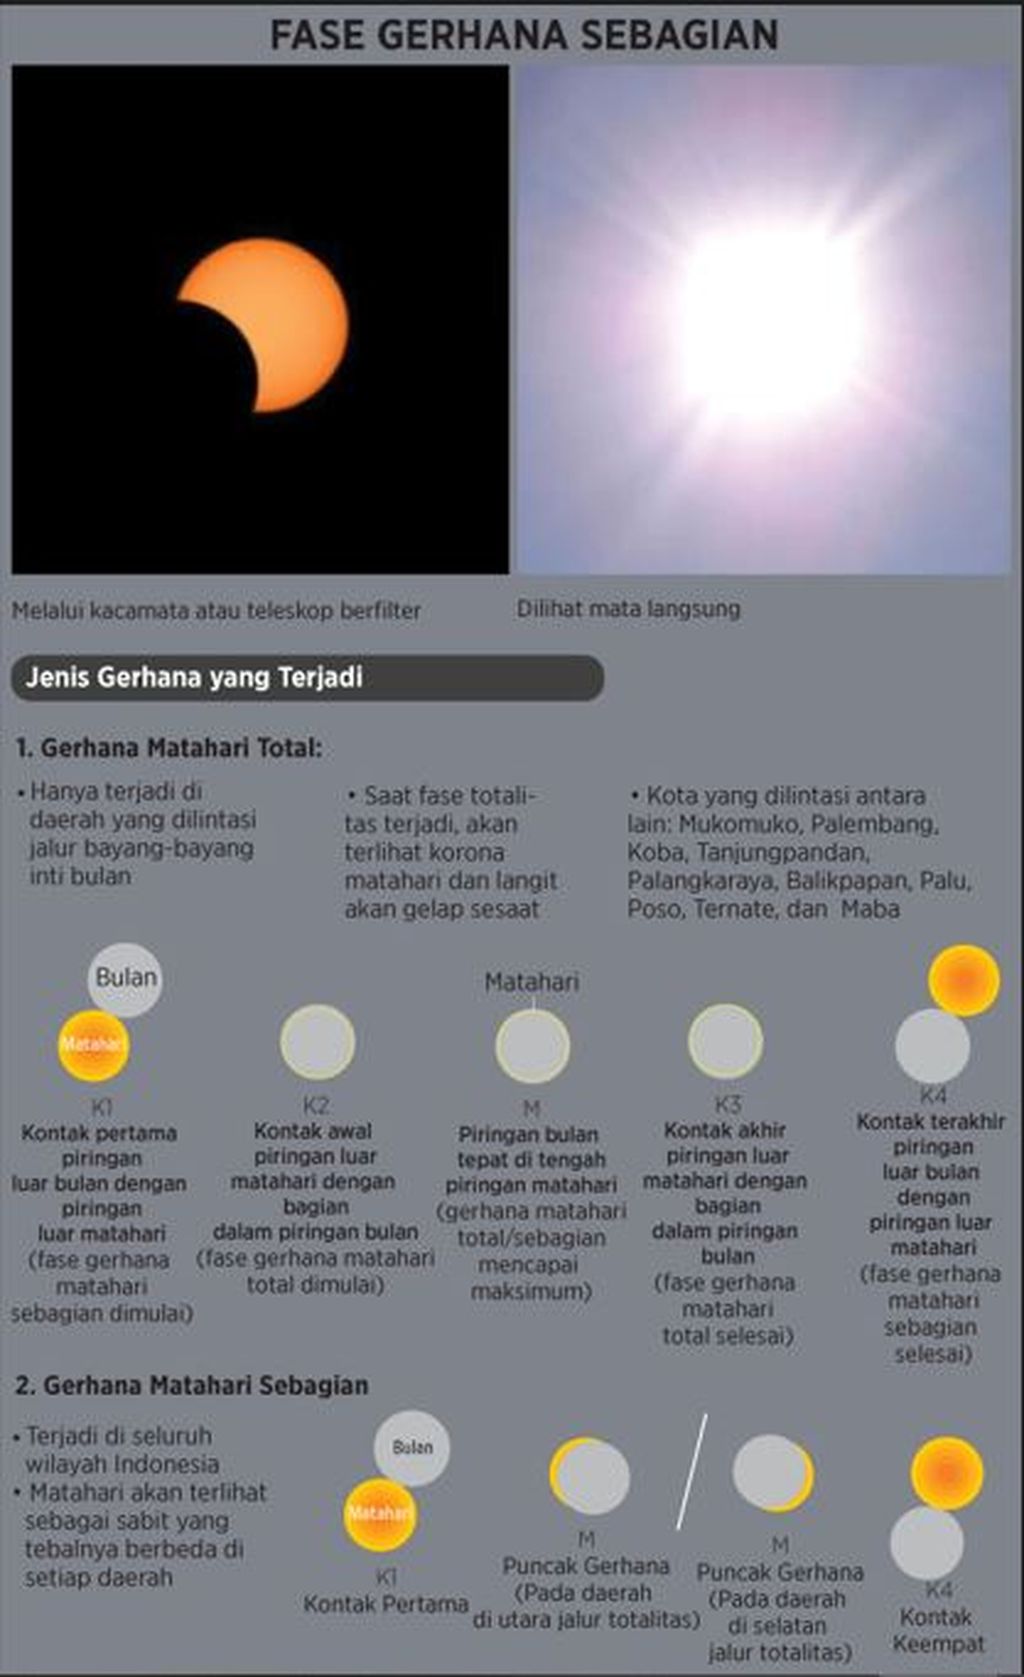 Proses terjadinya gerhana Matahari total dan gerhana Matahari sebagian.